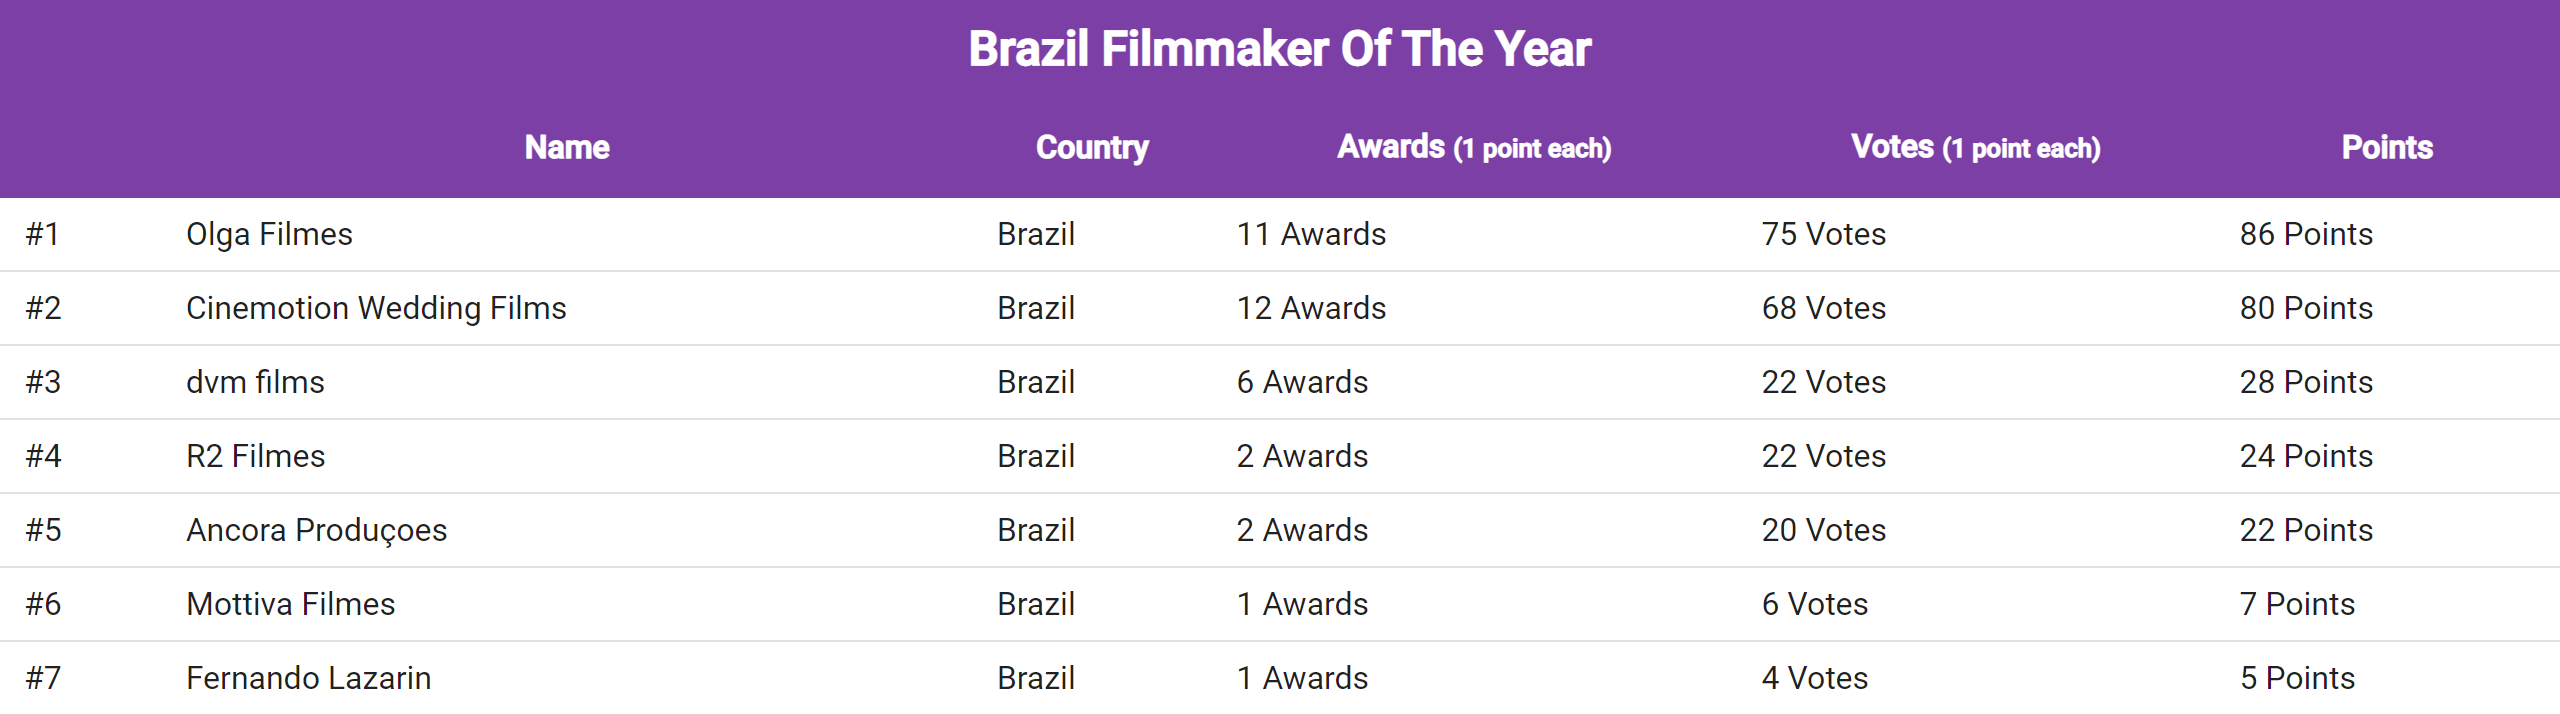 brazil_filmmaker_of_the_year_2021